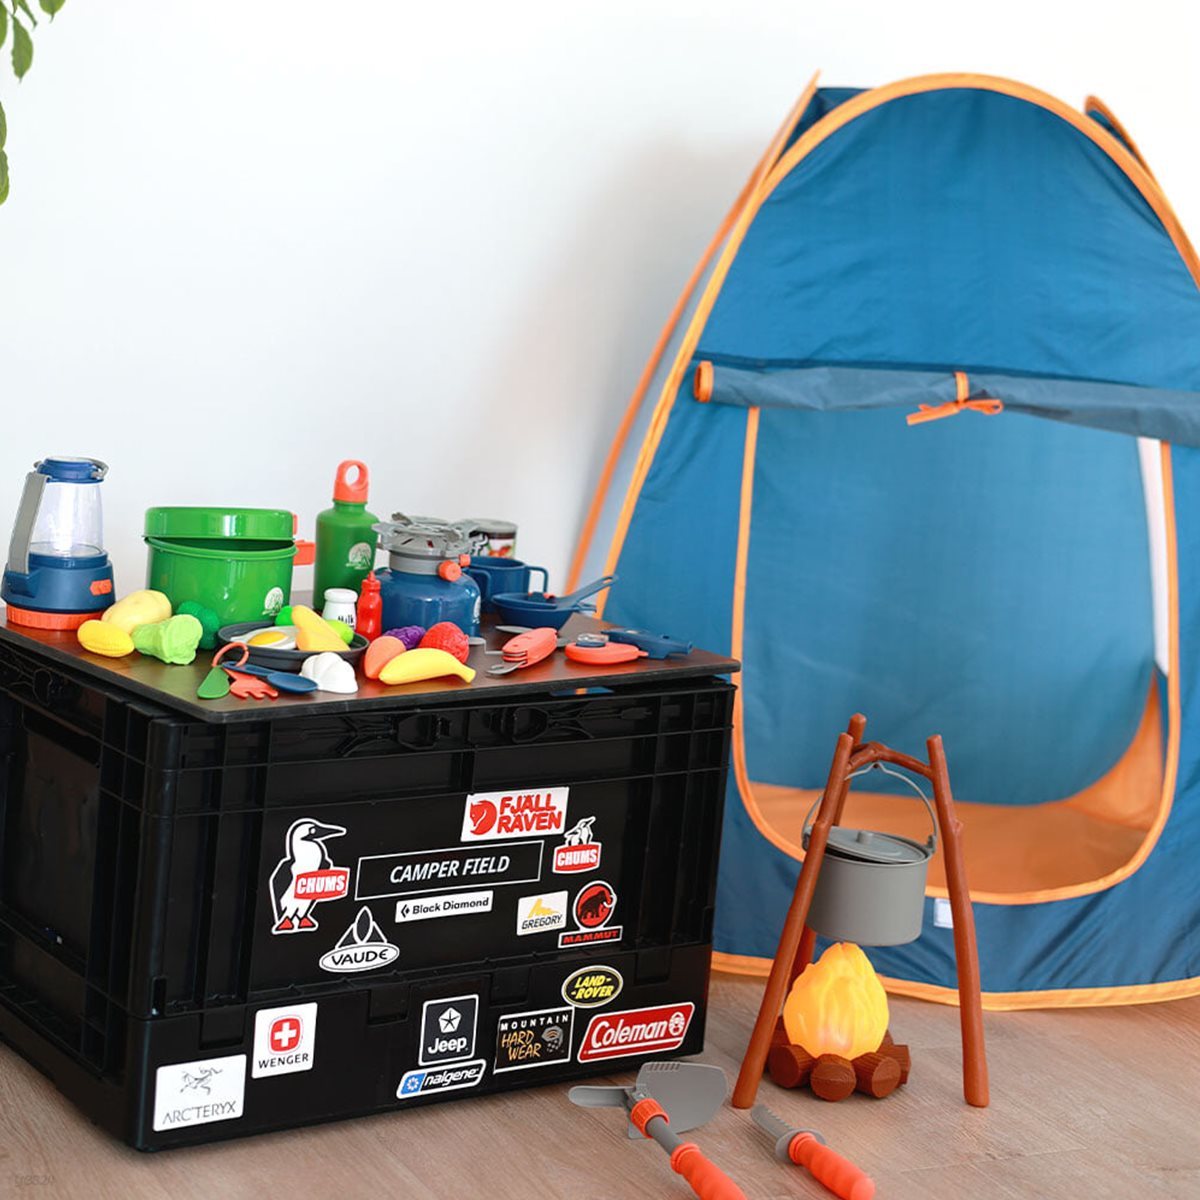 레츠토이 레츠 홈캠핑 캠핑 놀이 텐트 장난감